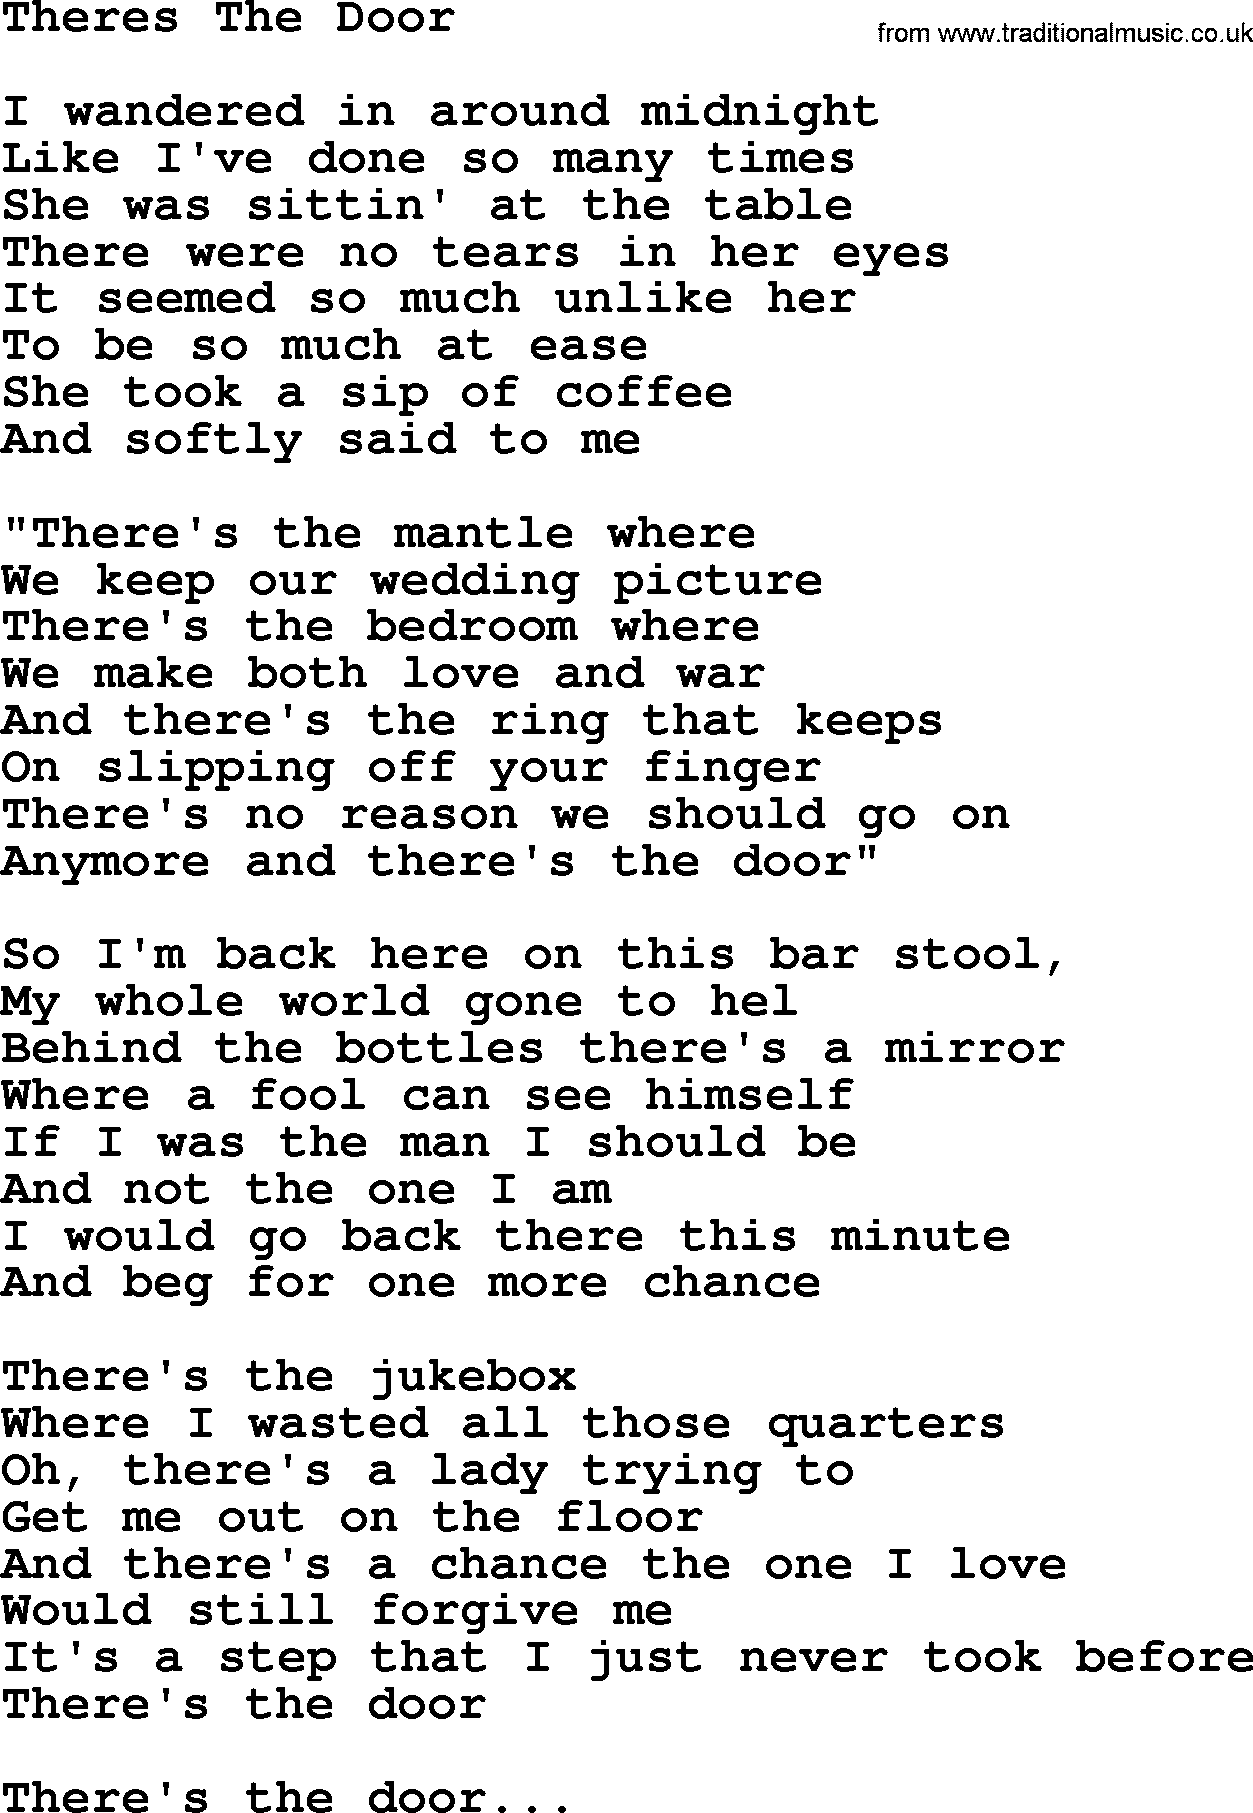 George Jones song: Theres The Door, lyrics